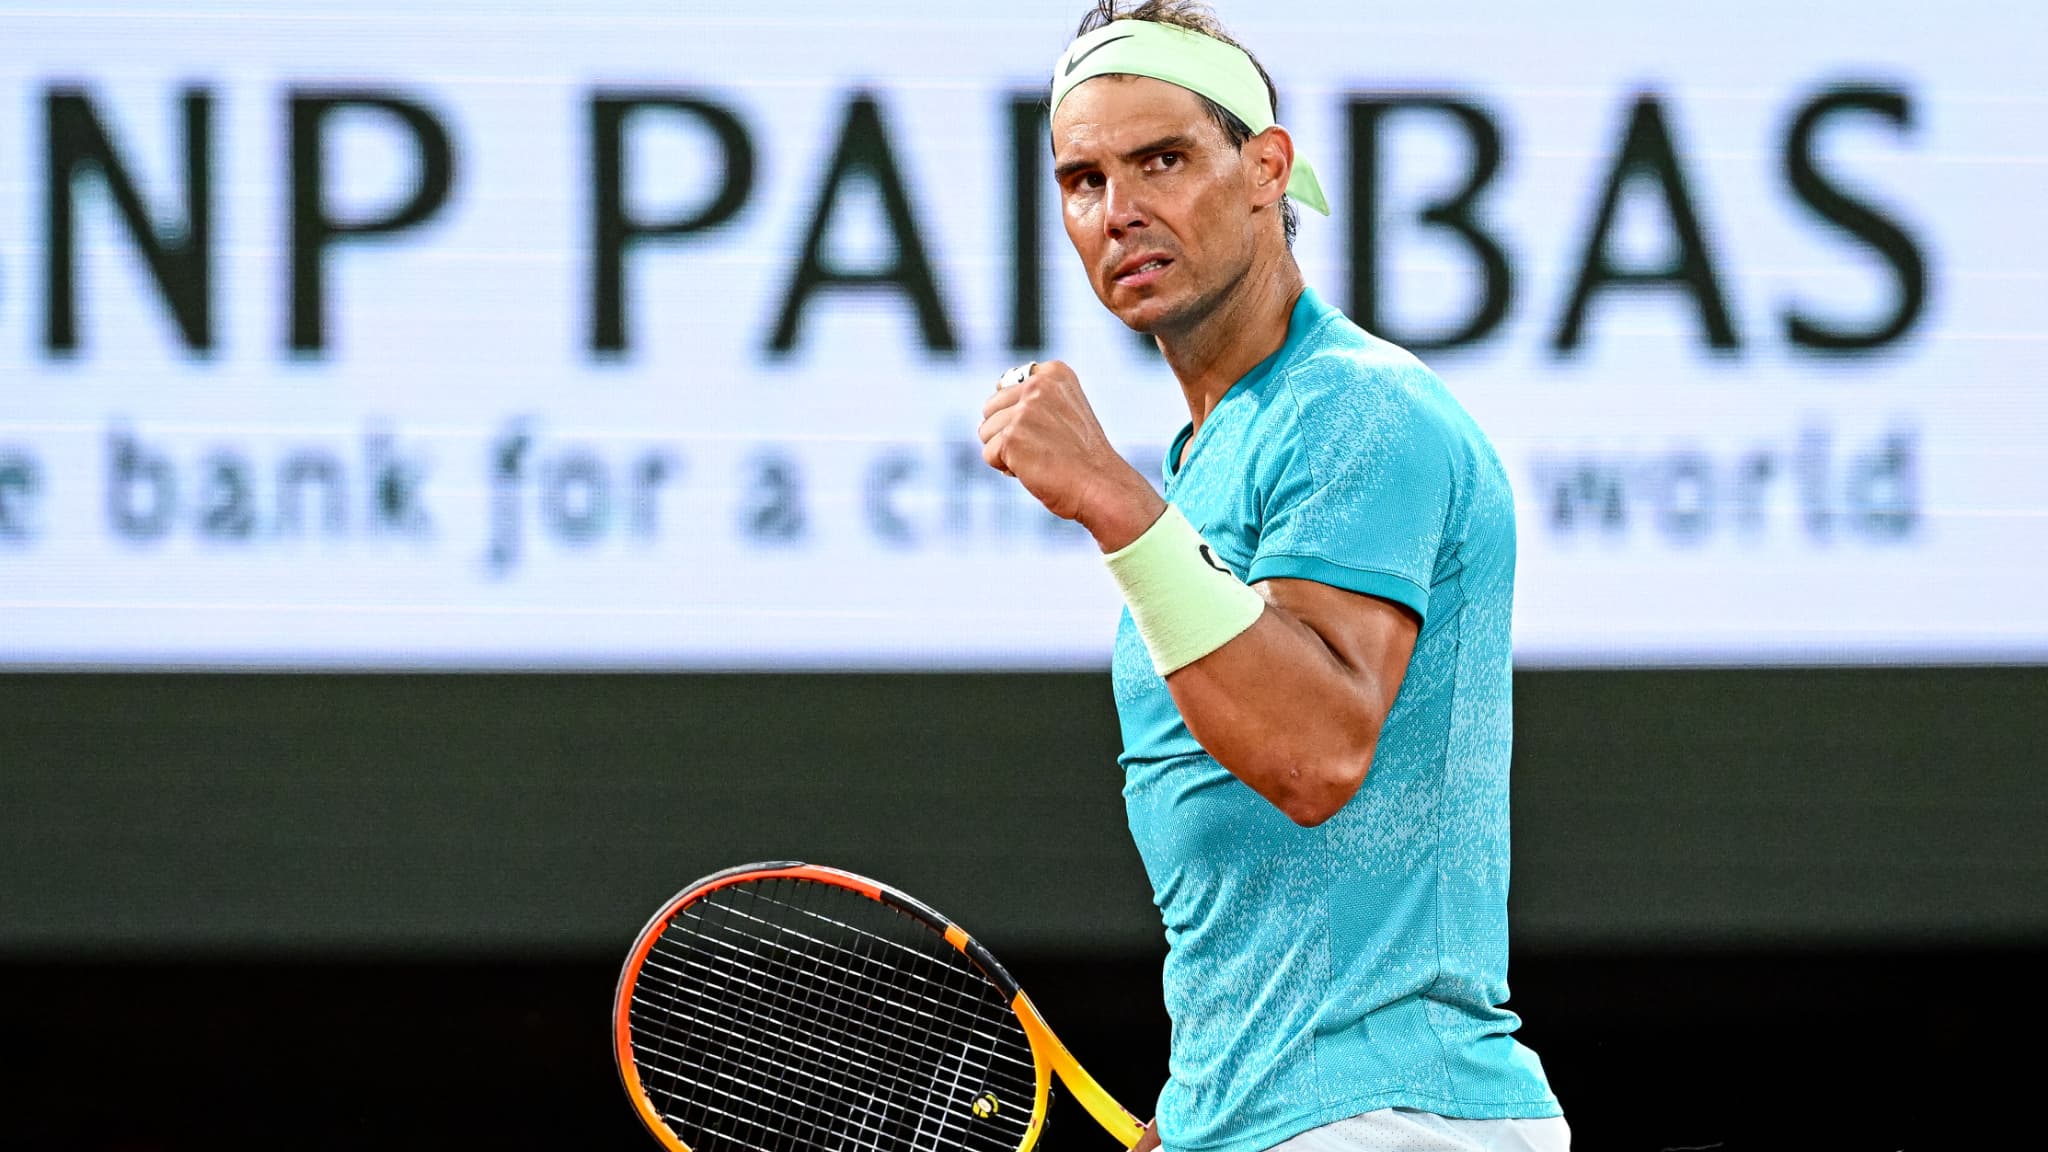 RolandGarros "C'était me forcer à ne plus jouer", Nadal explique